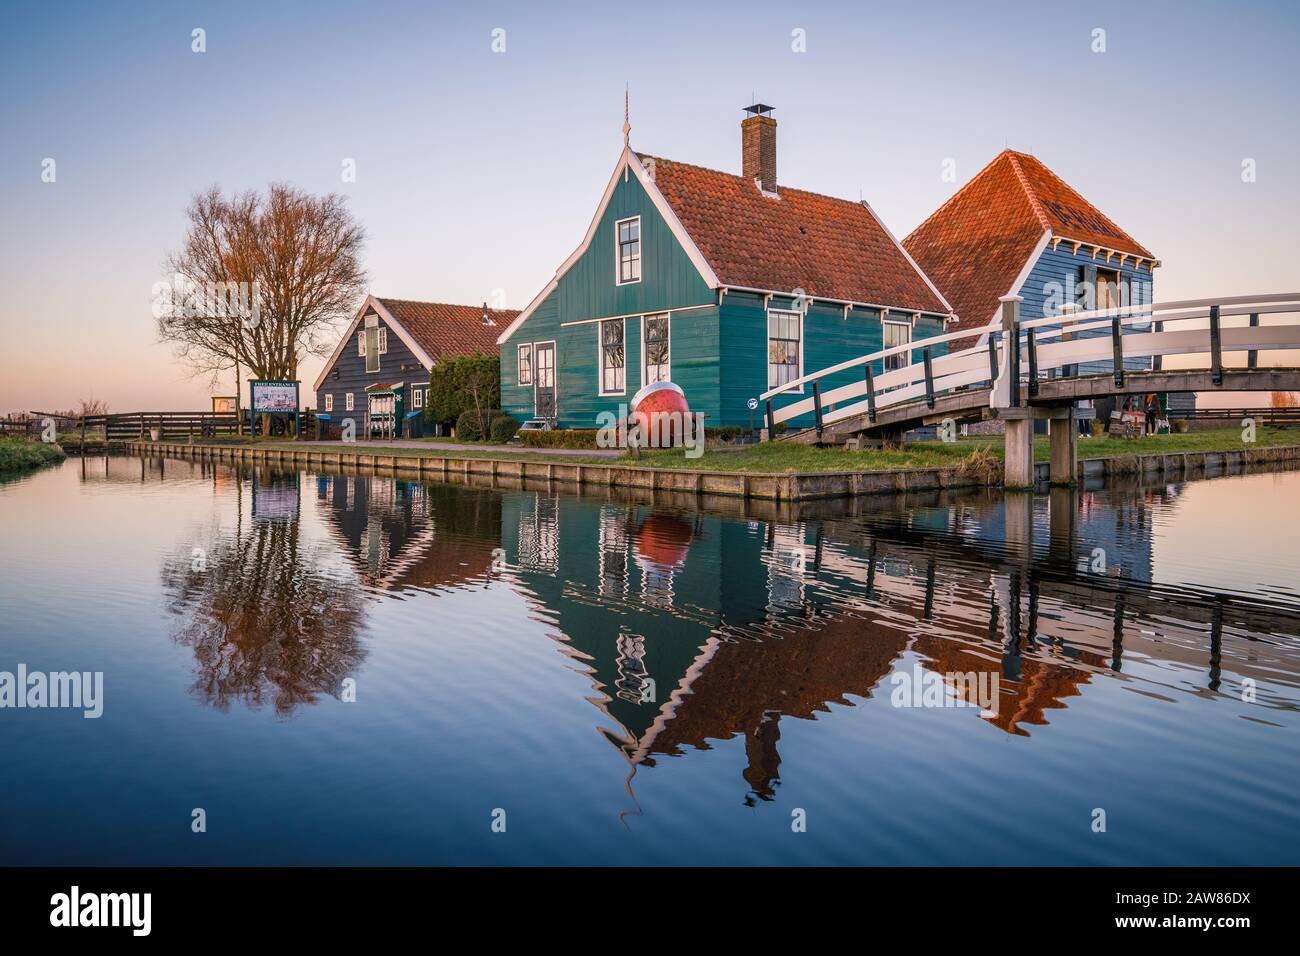 Maison hollandaise typique à zaanse schans, destination touristique près d'Amsterdam - Hollande Banque D'Images